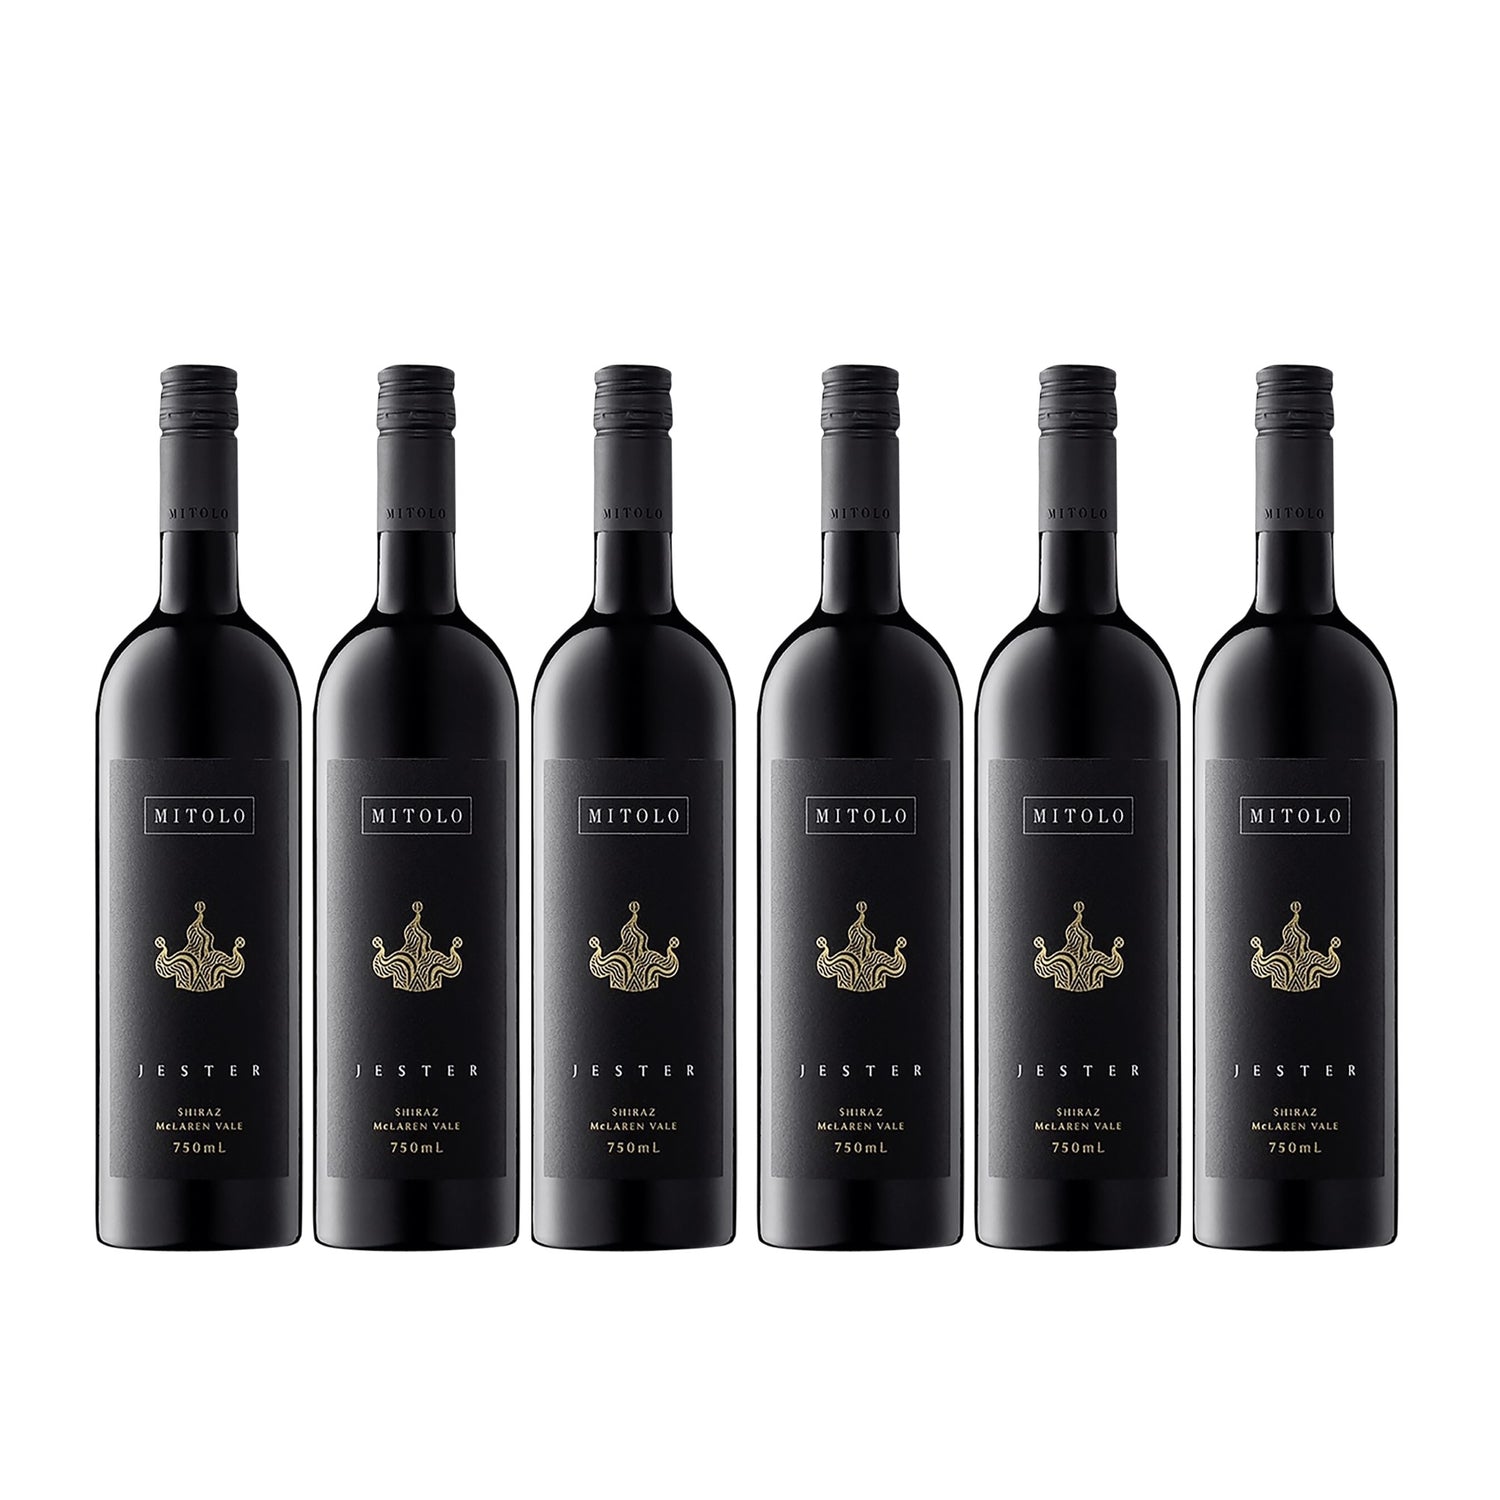 Mitolo Jester Shiraz McLaren Vale Rotwein Wein trocken Australien (6 x 0.75l) - Versanel -